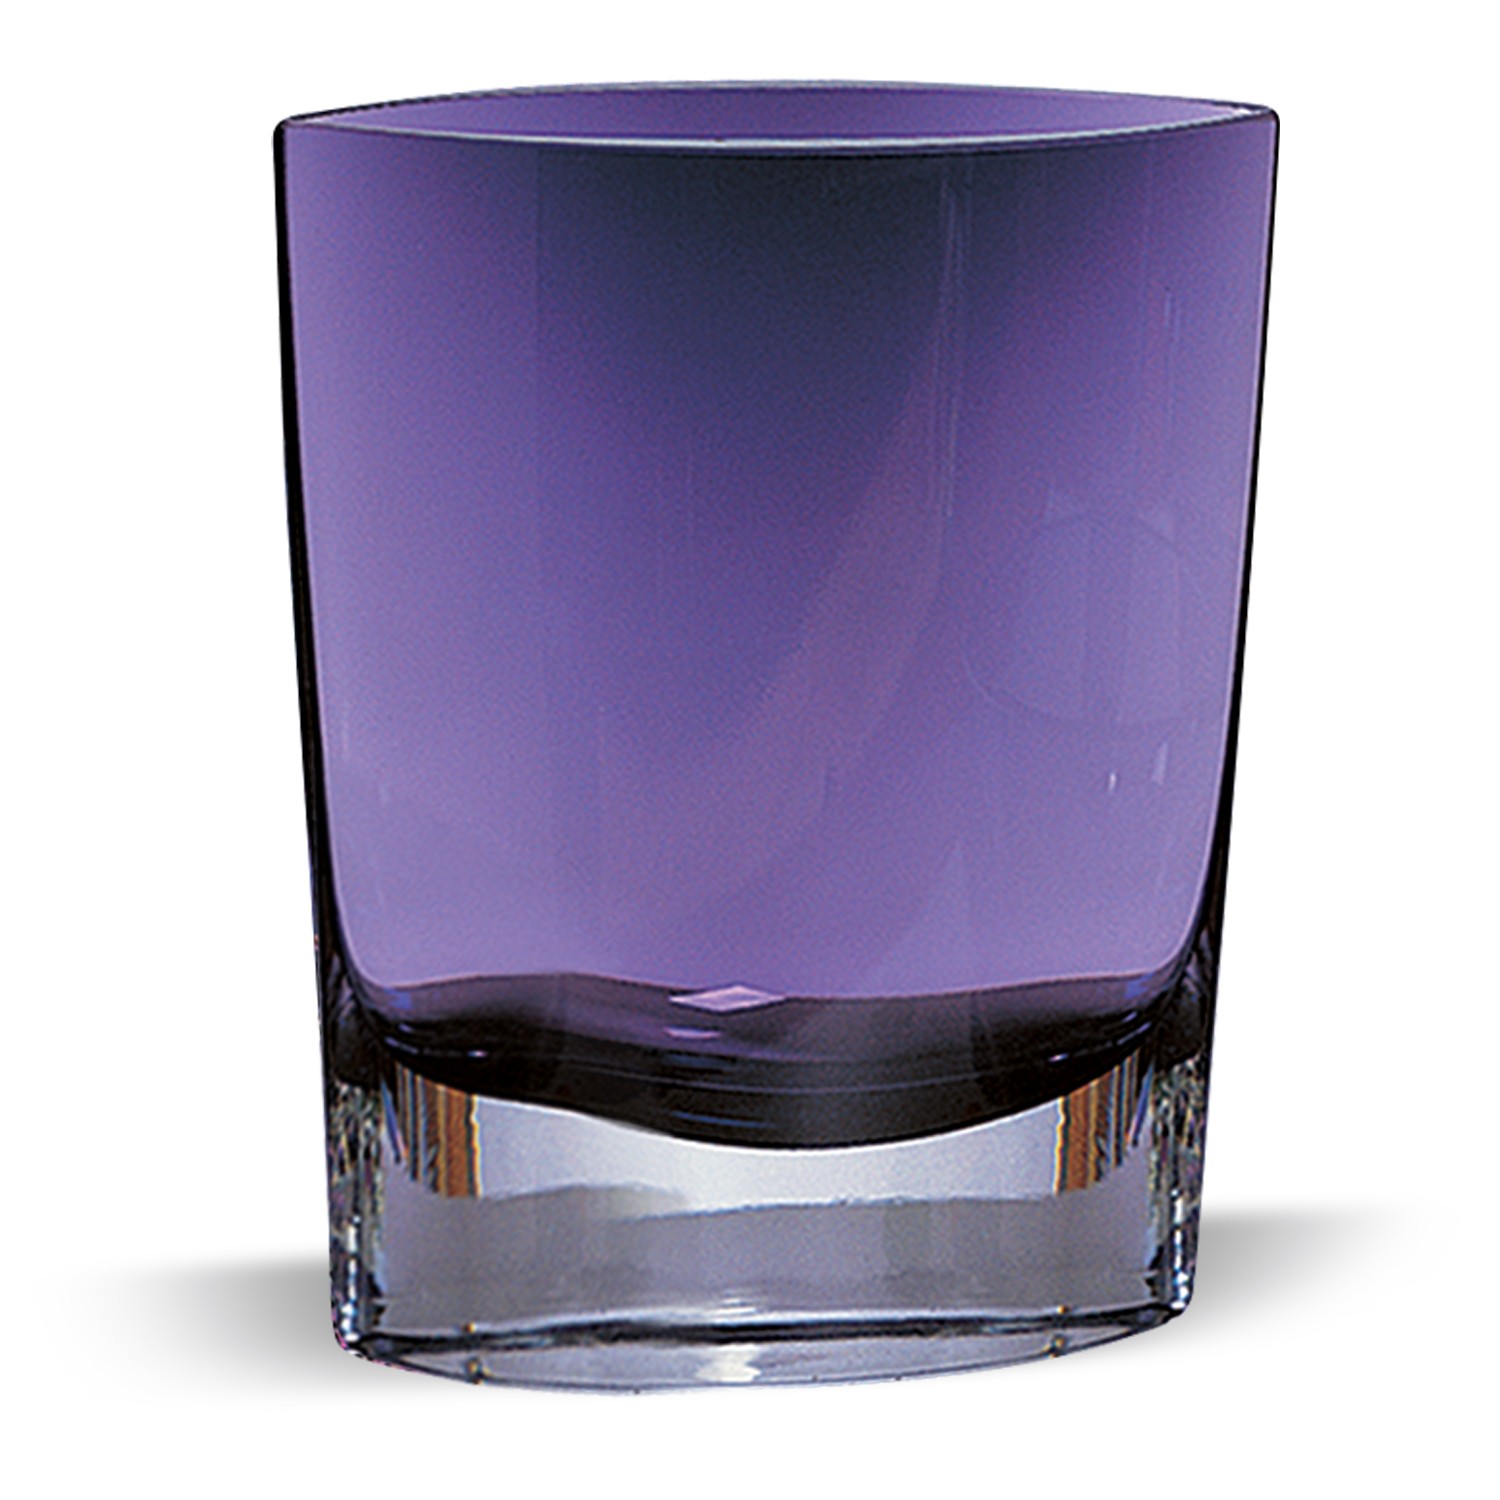 8" Mouth Blown Glass European Made Light Violet Pocket Shaped Vase